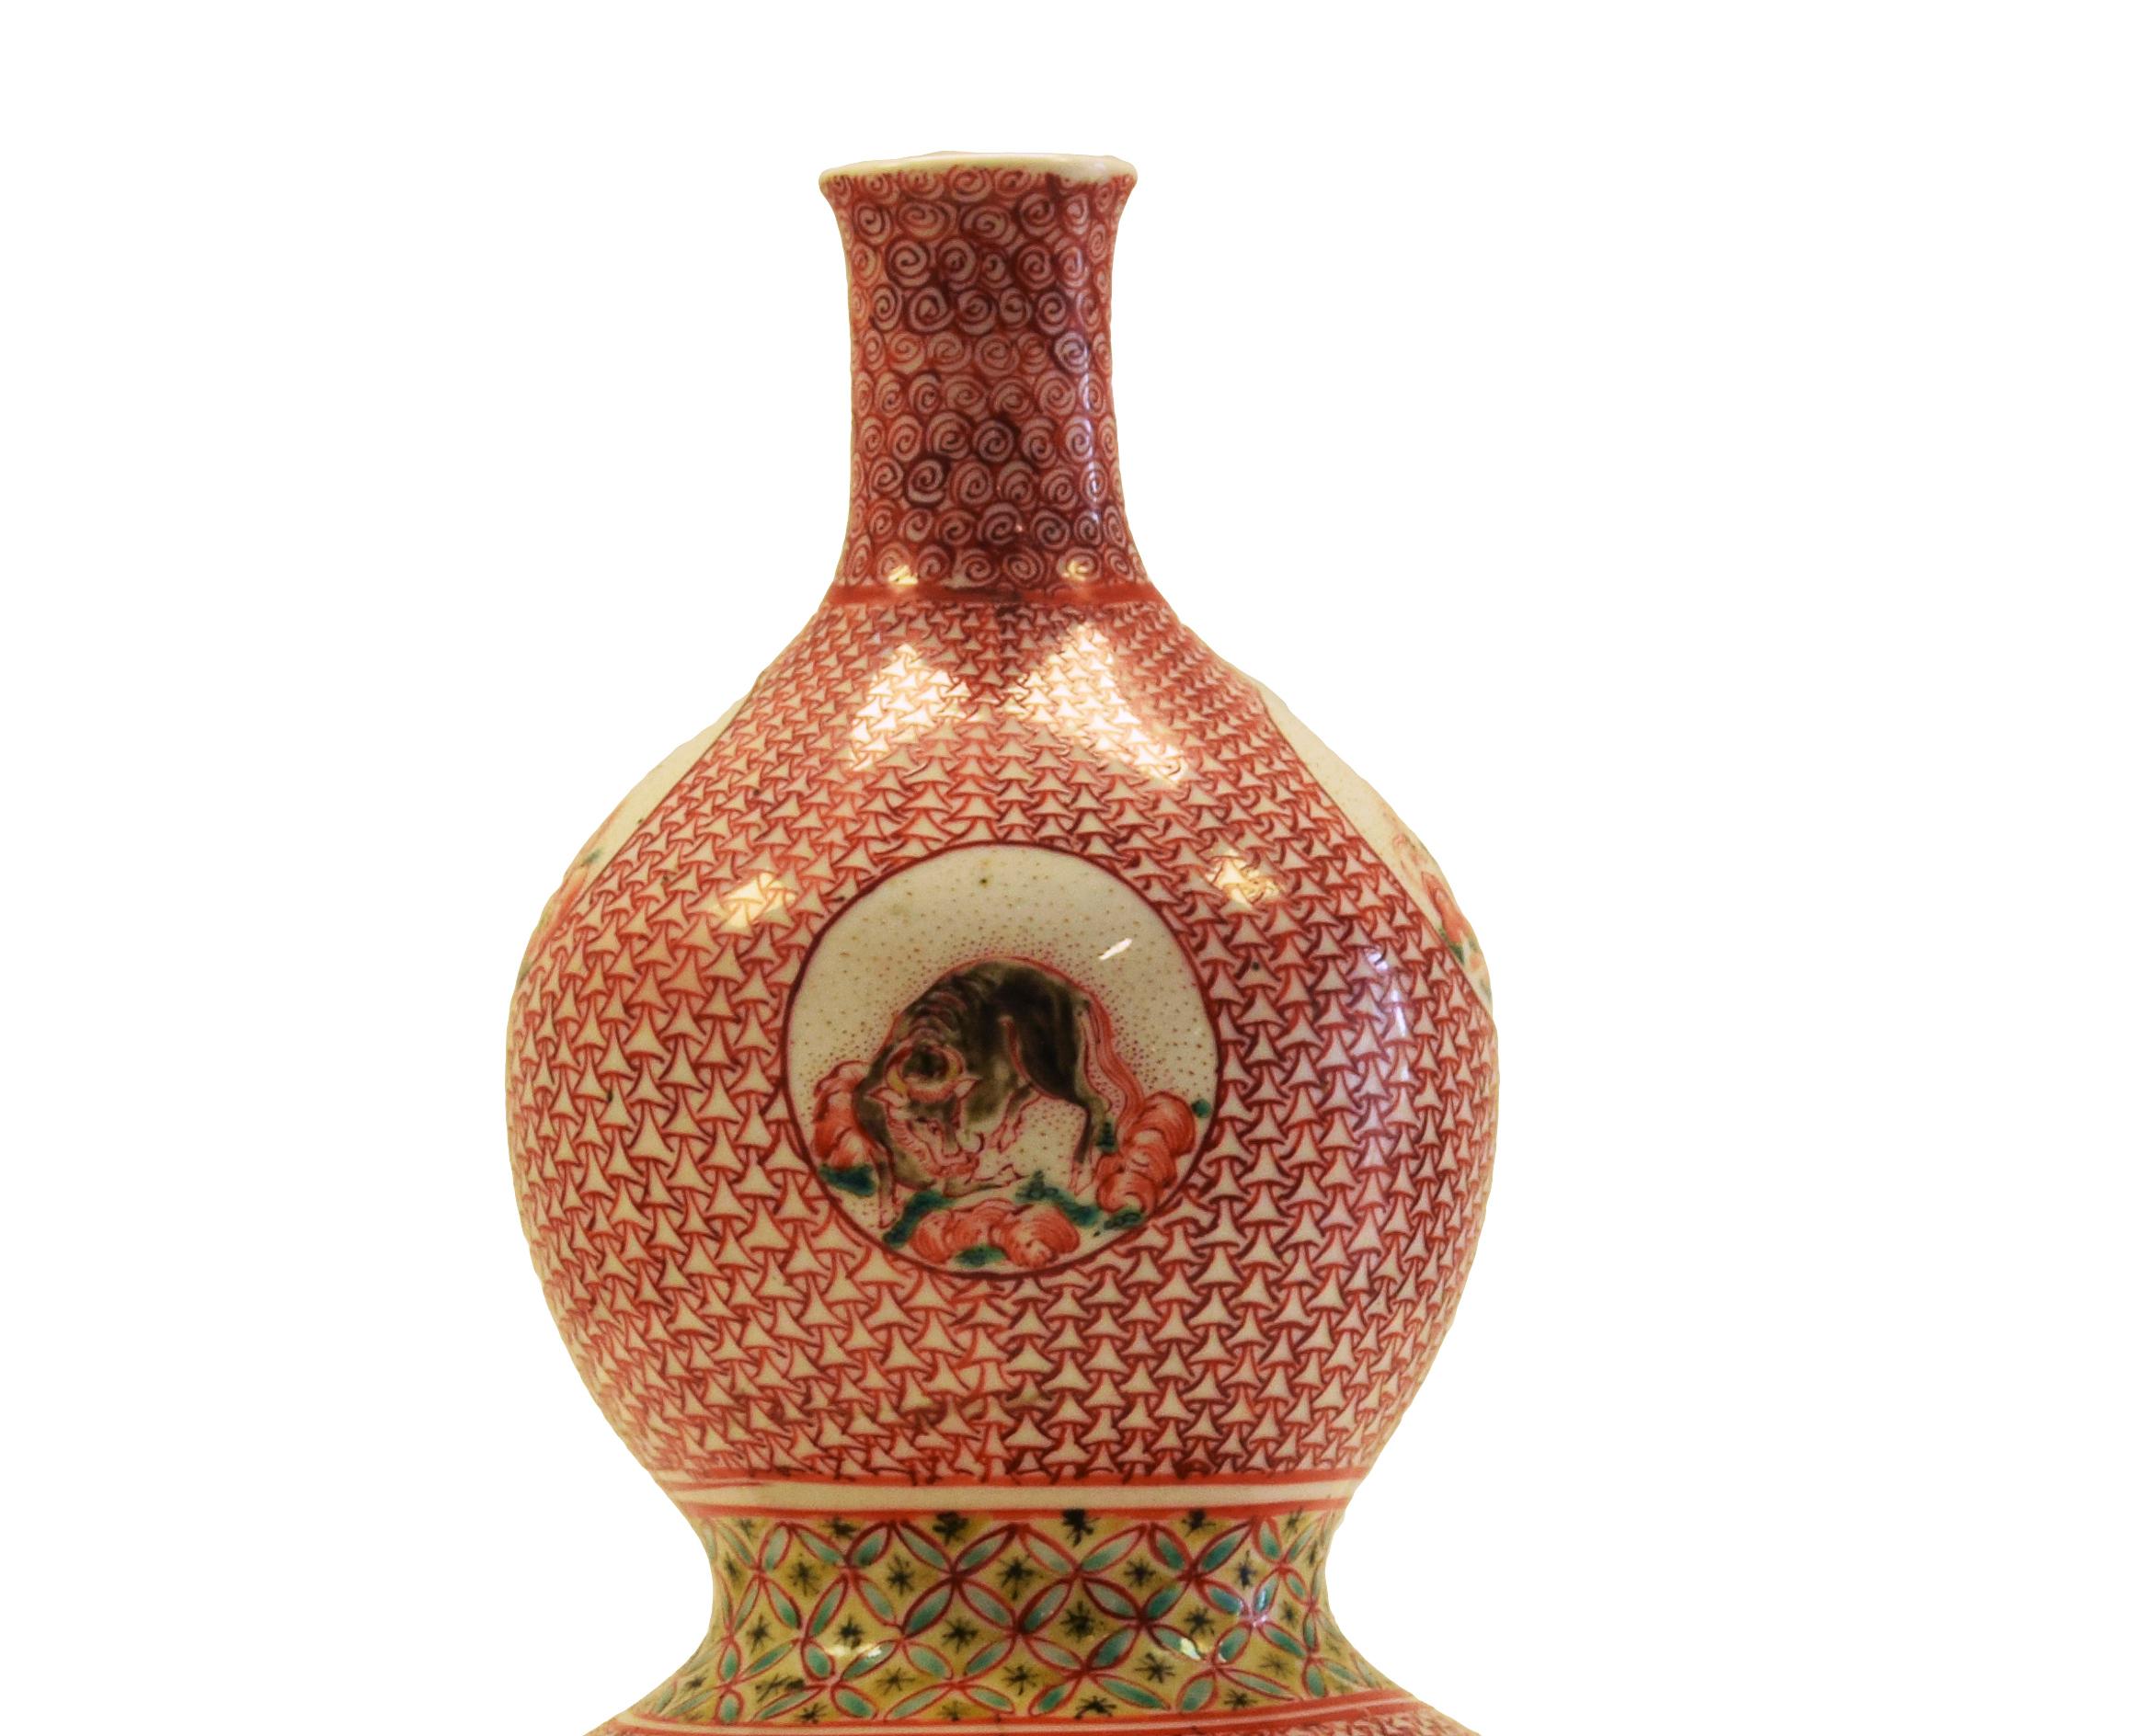 Ce vase à double gourde en porcelaine est un merveilleux objet décoratif réalisé par un artiste japonais durant la période Edo, au début du XIXe siècle.

Peint avec des émaux polychromes, il présente sur le corps un fond à alvéoles sur lequel des